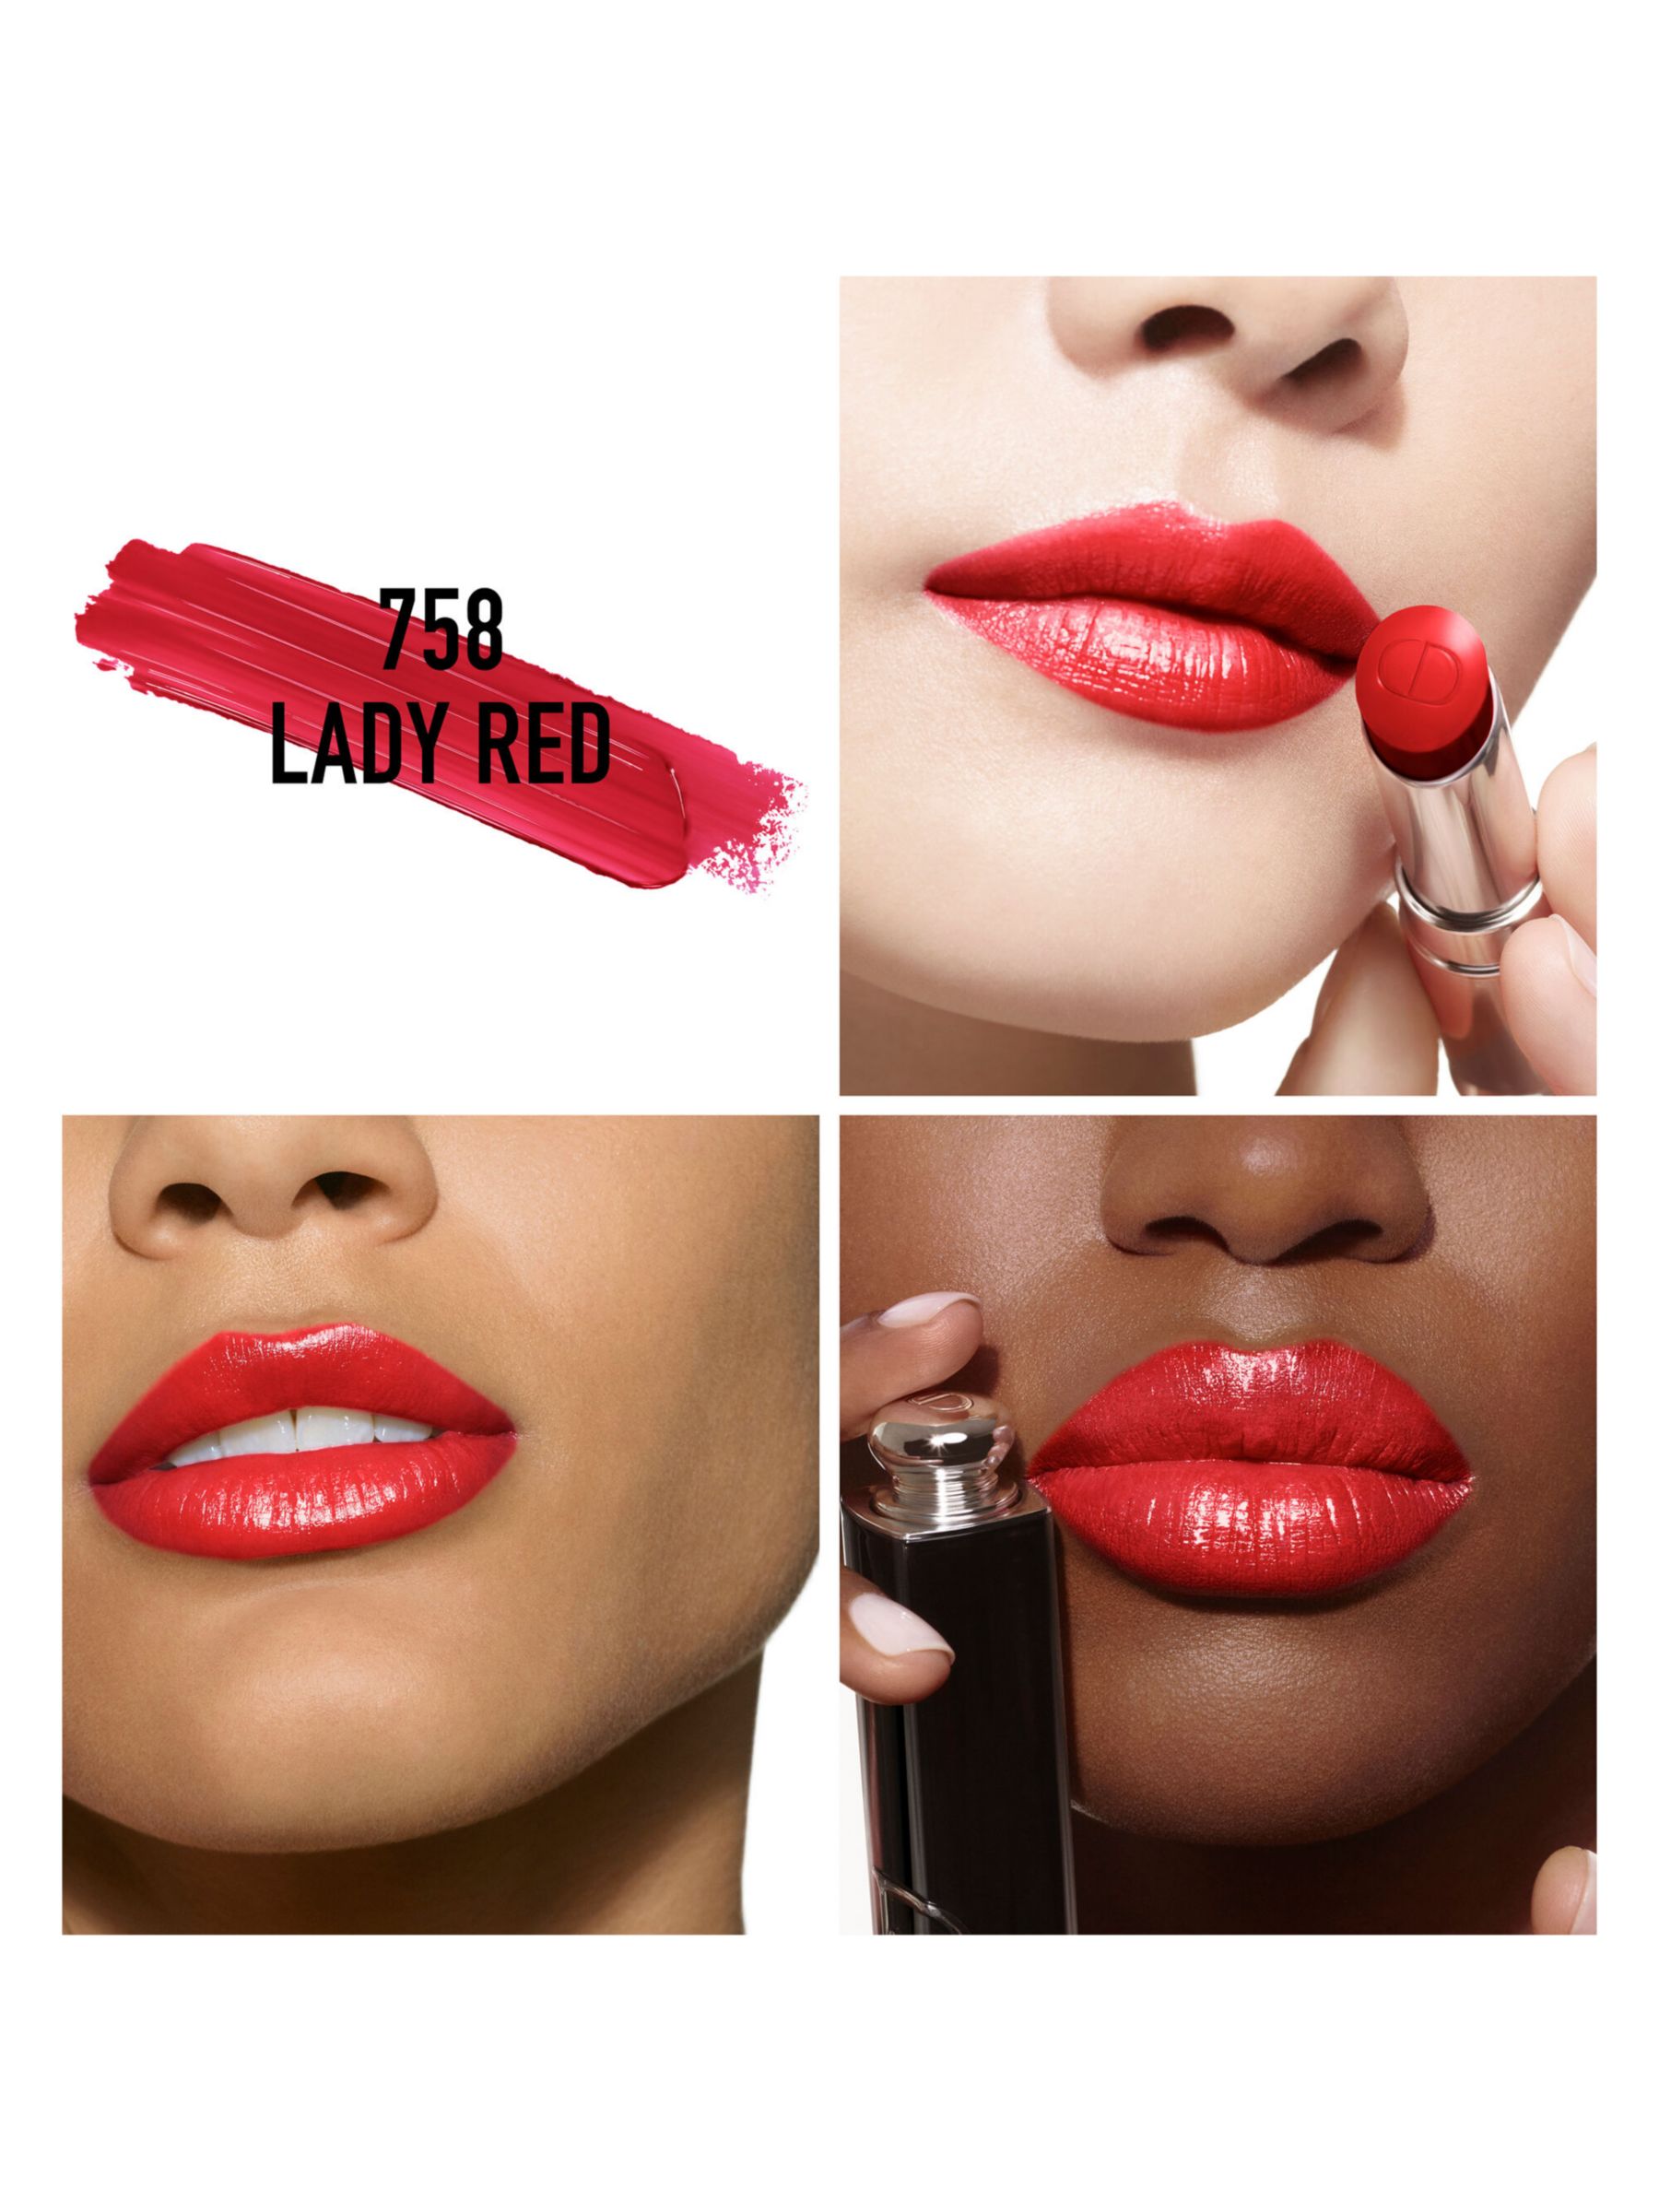 DIOR Addict Shine Refillable Lipstick, 758 Lady Red 2